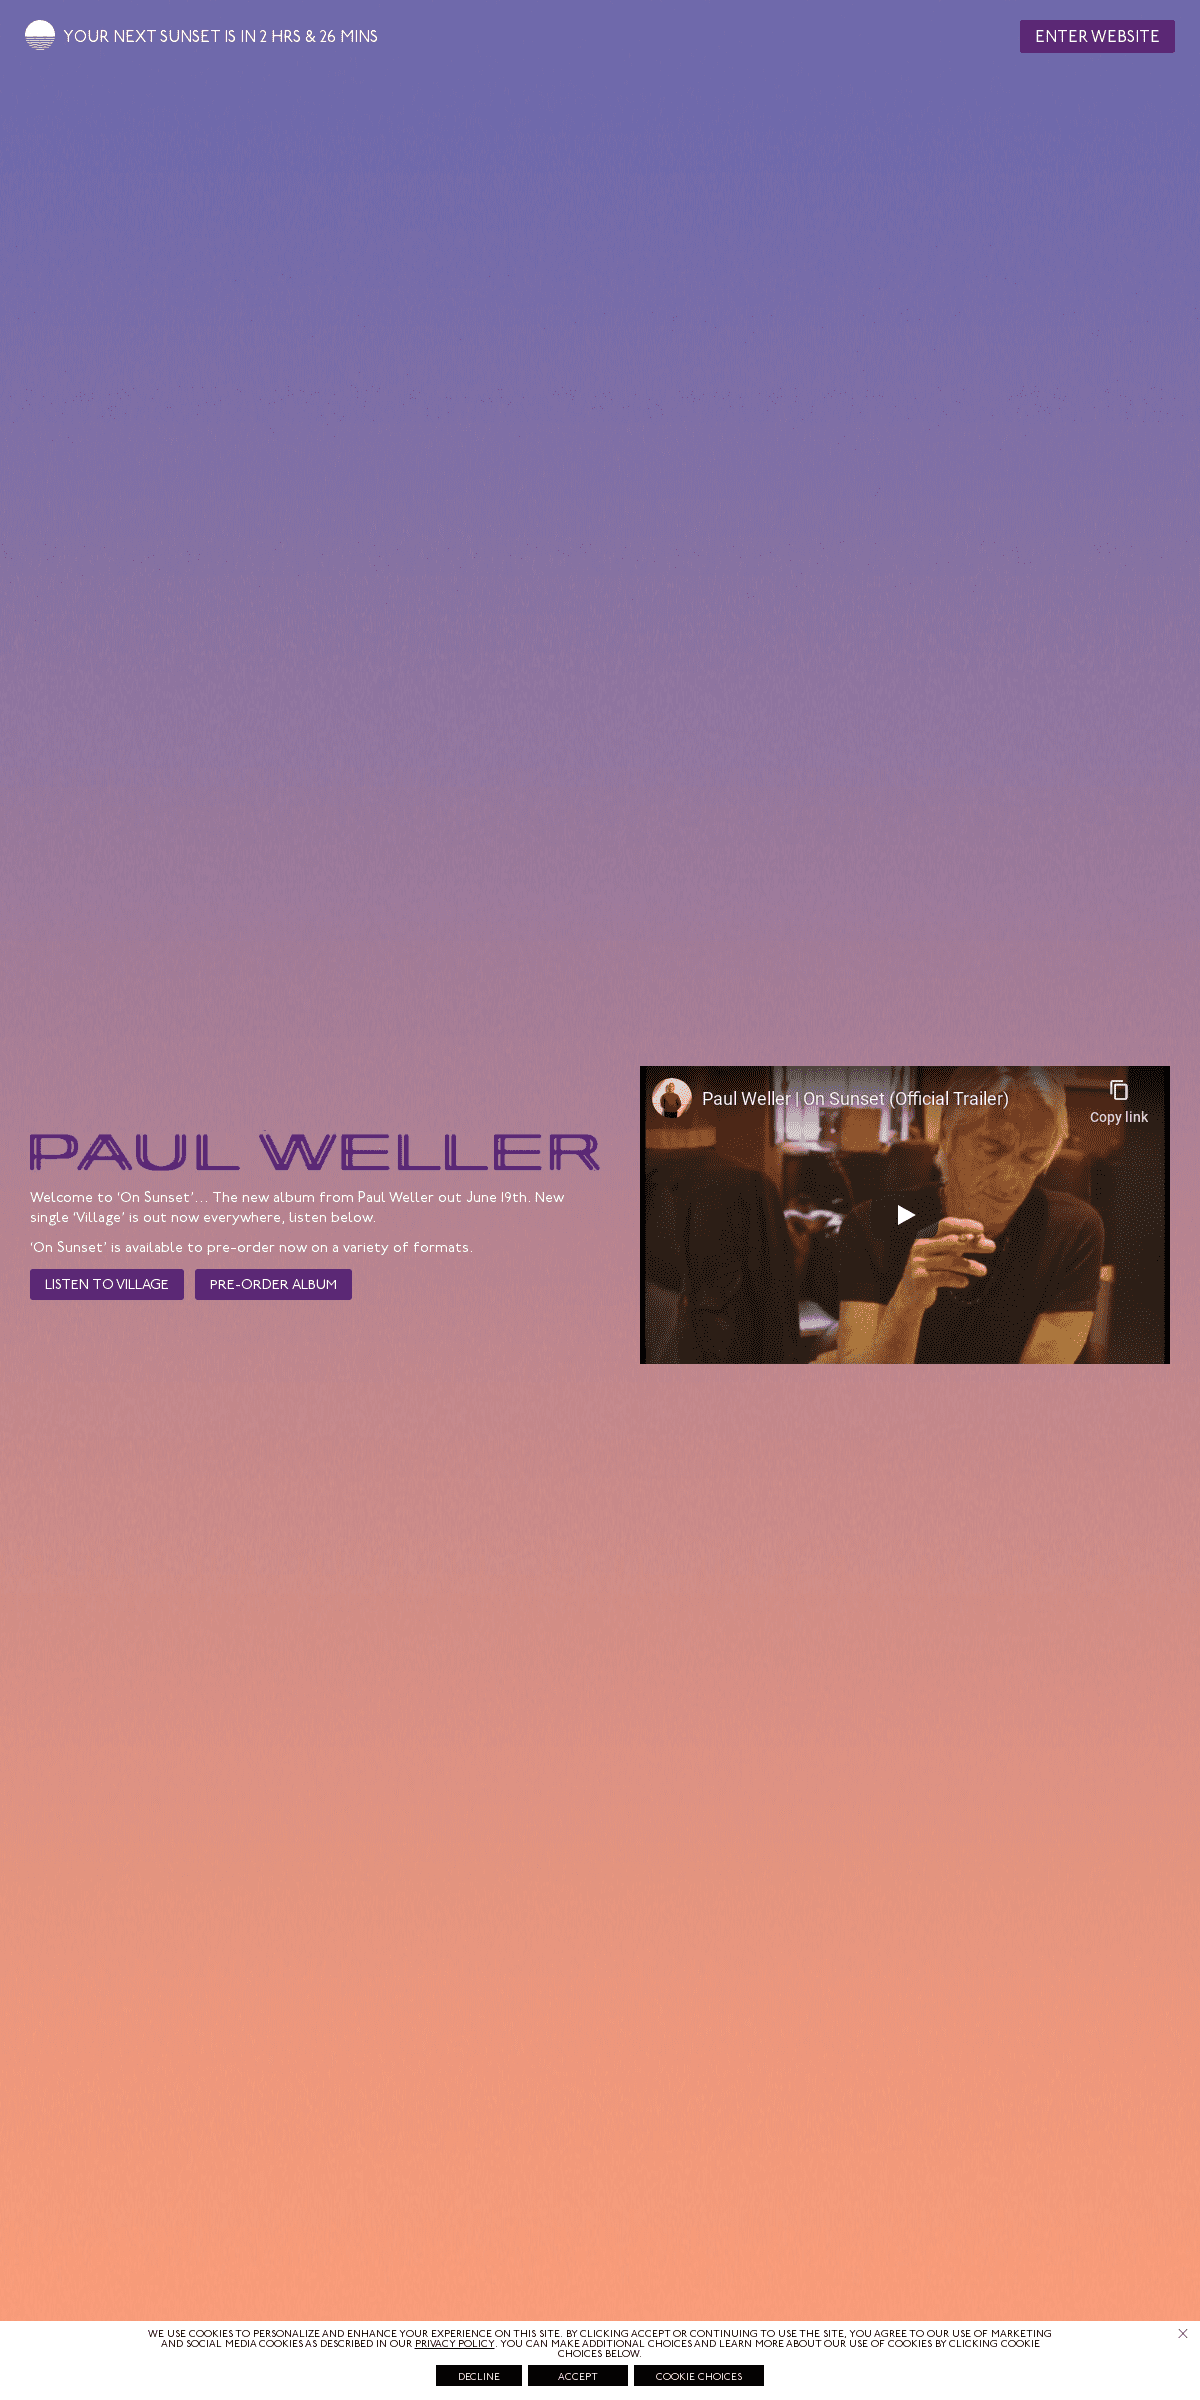 A complete backup of paulweller.com